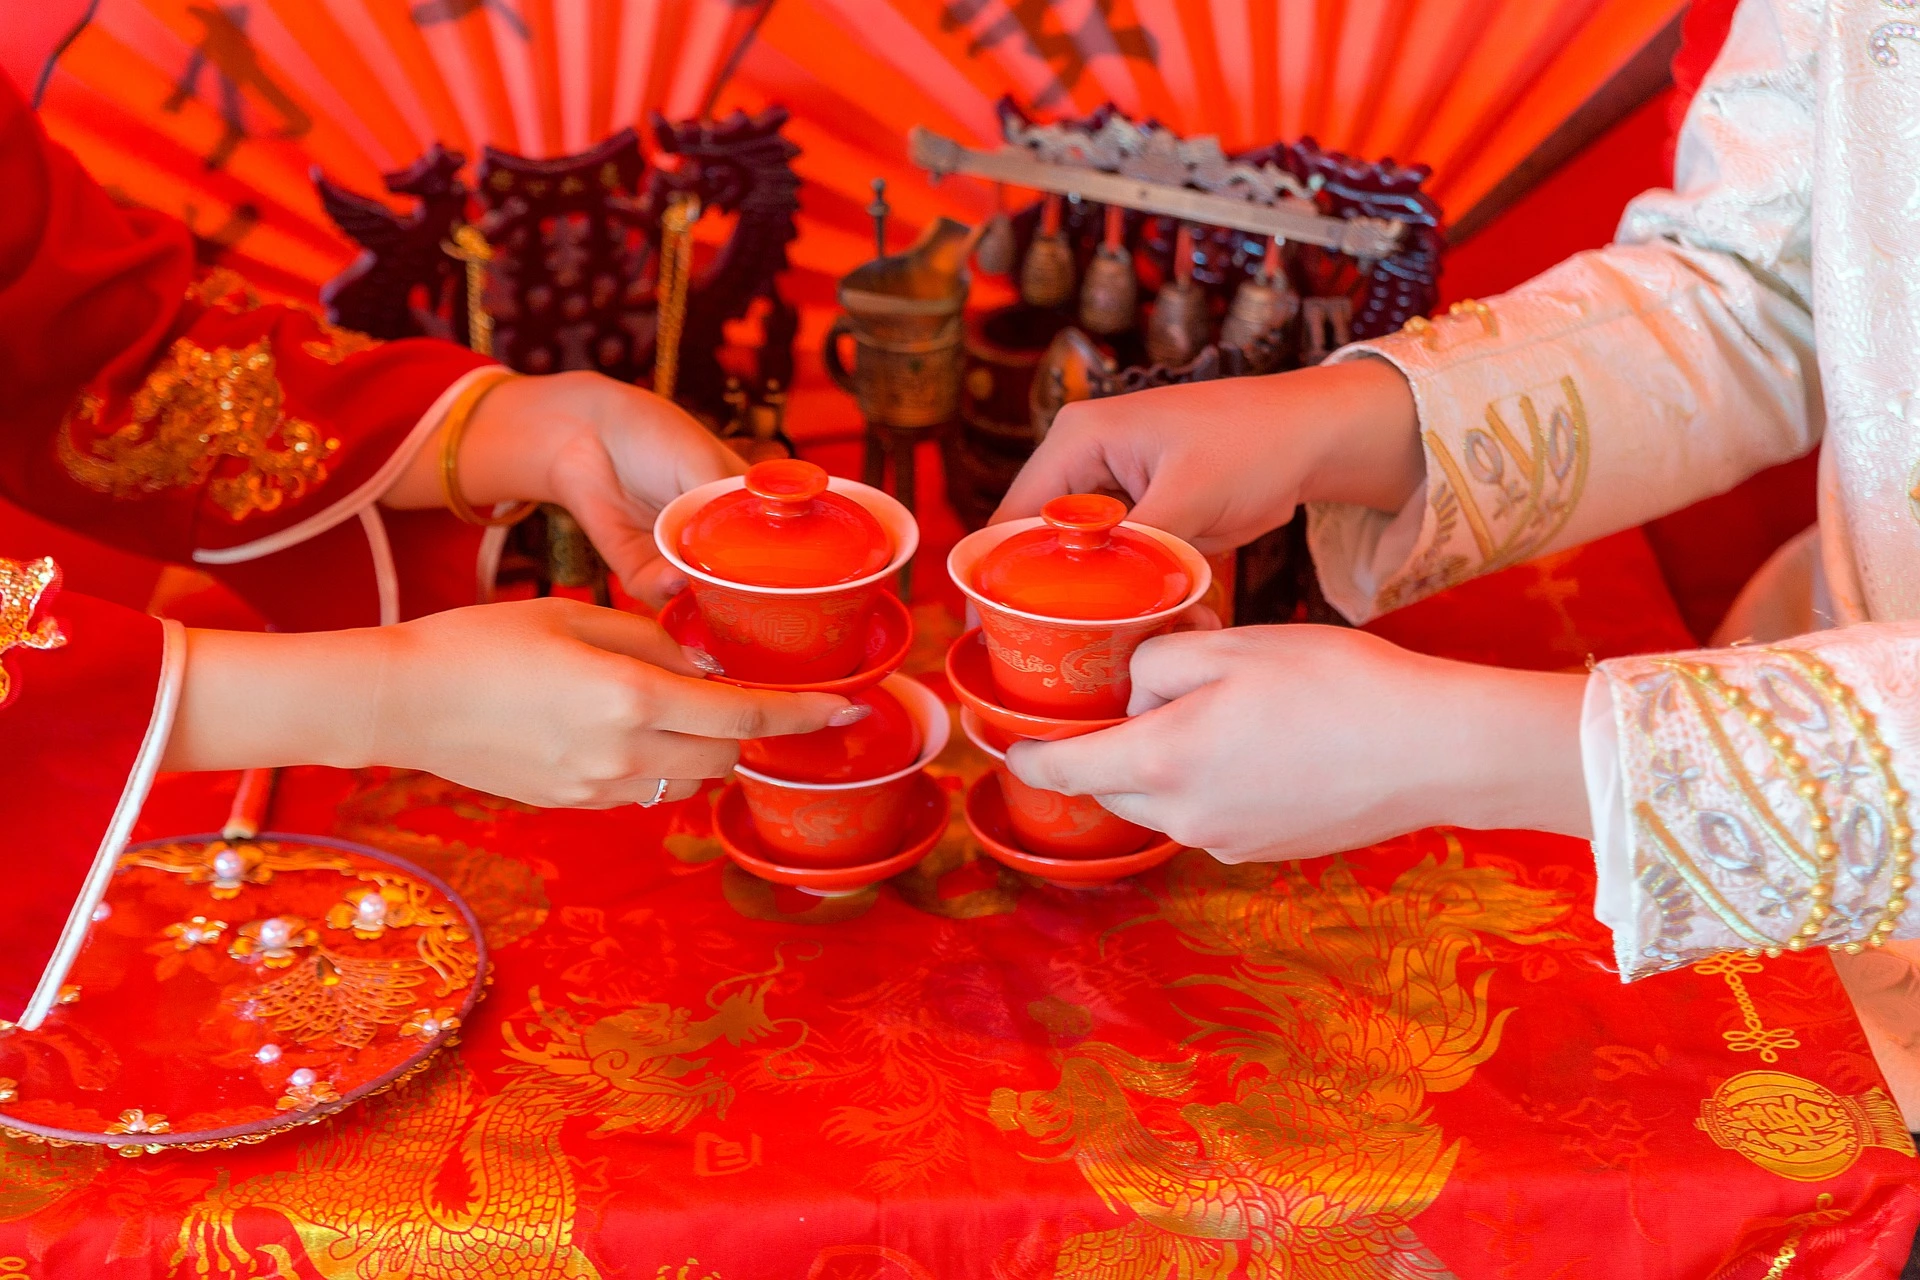 يستمتع شخصان صينيان بأنواع مختلفة من الشاي الصيني أثناء جلوسهما على طاولة حمراء.